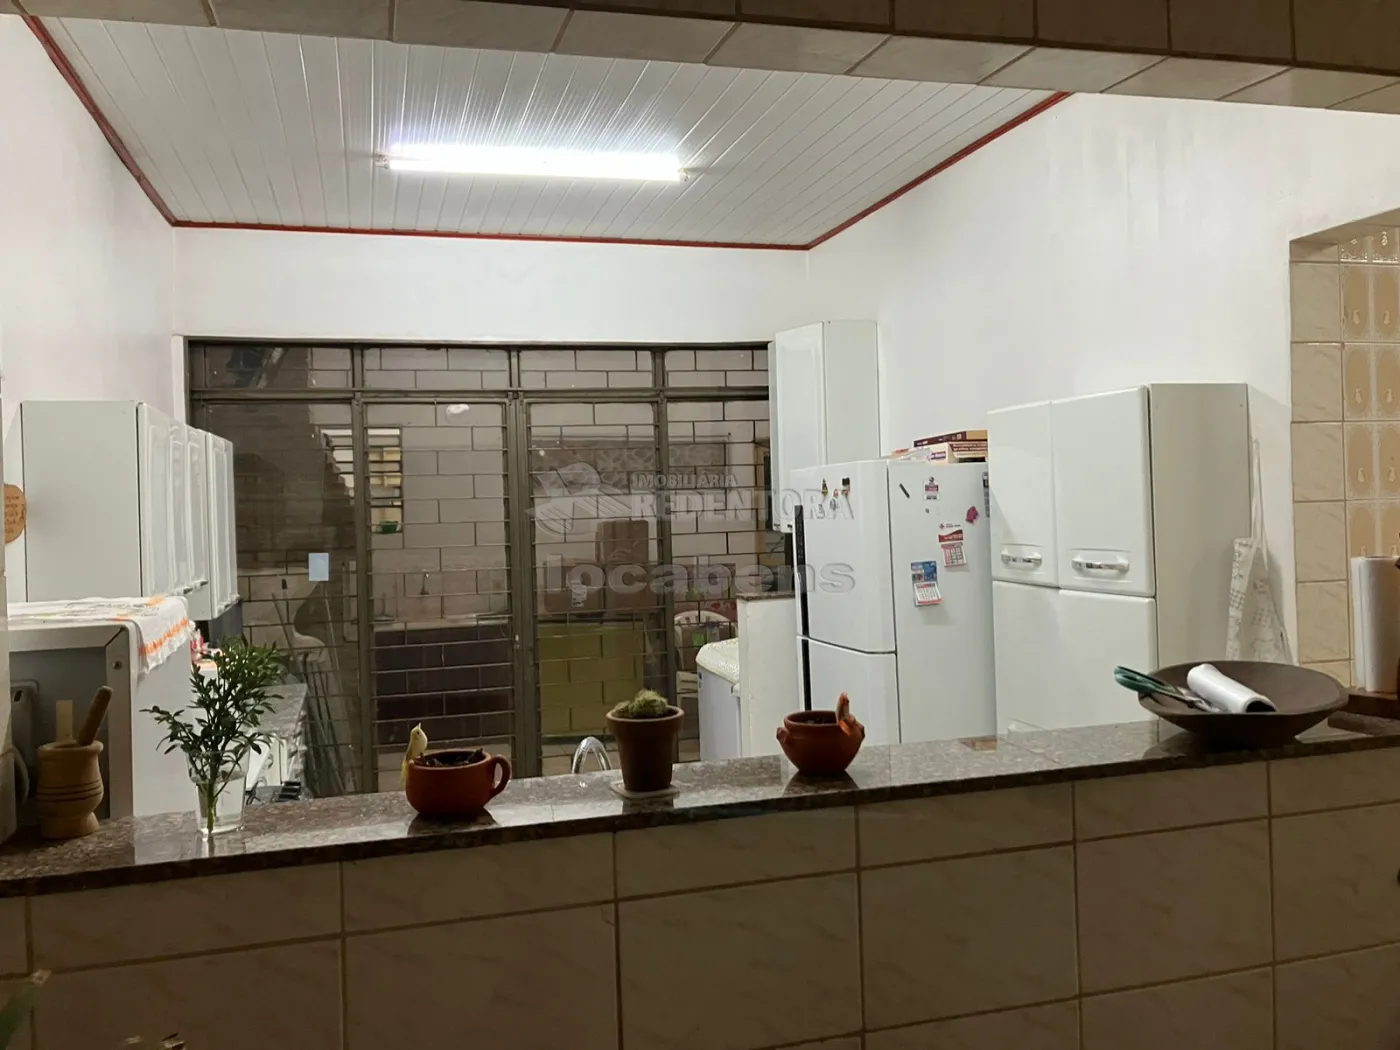 Comprar Casa / Padrão em São José do Rio Preto R$ 400.000,00 - Foto 15